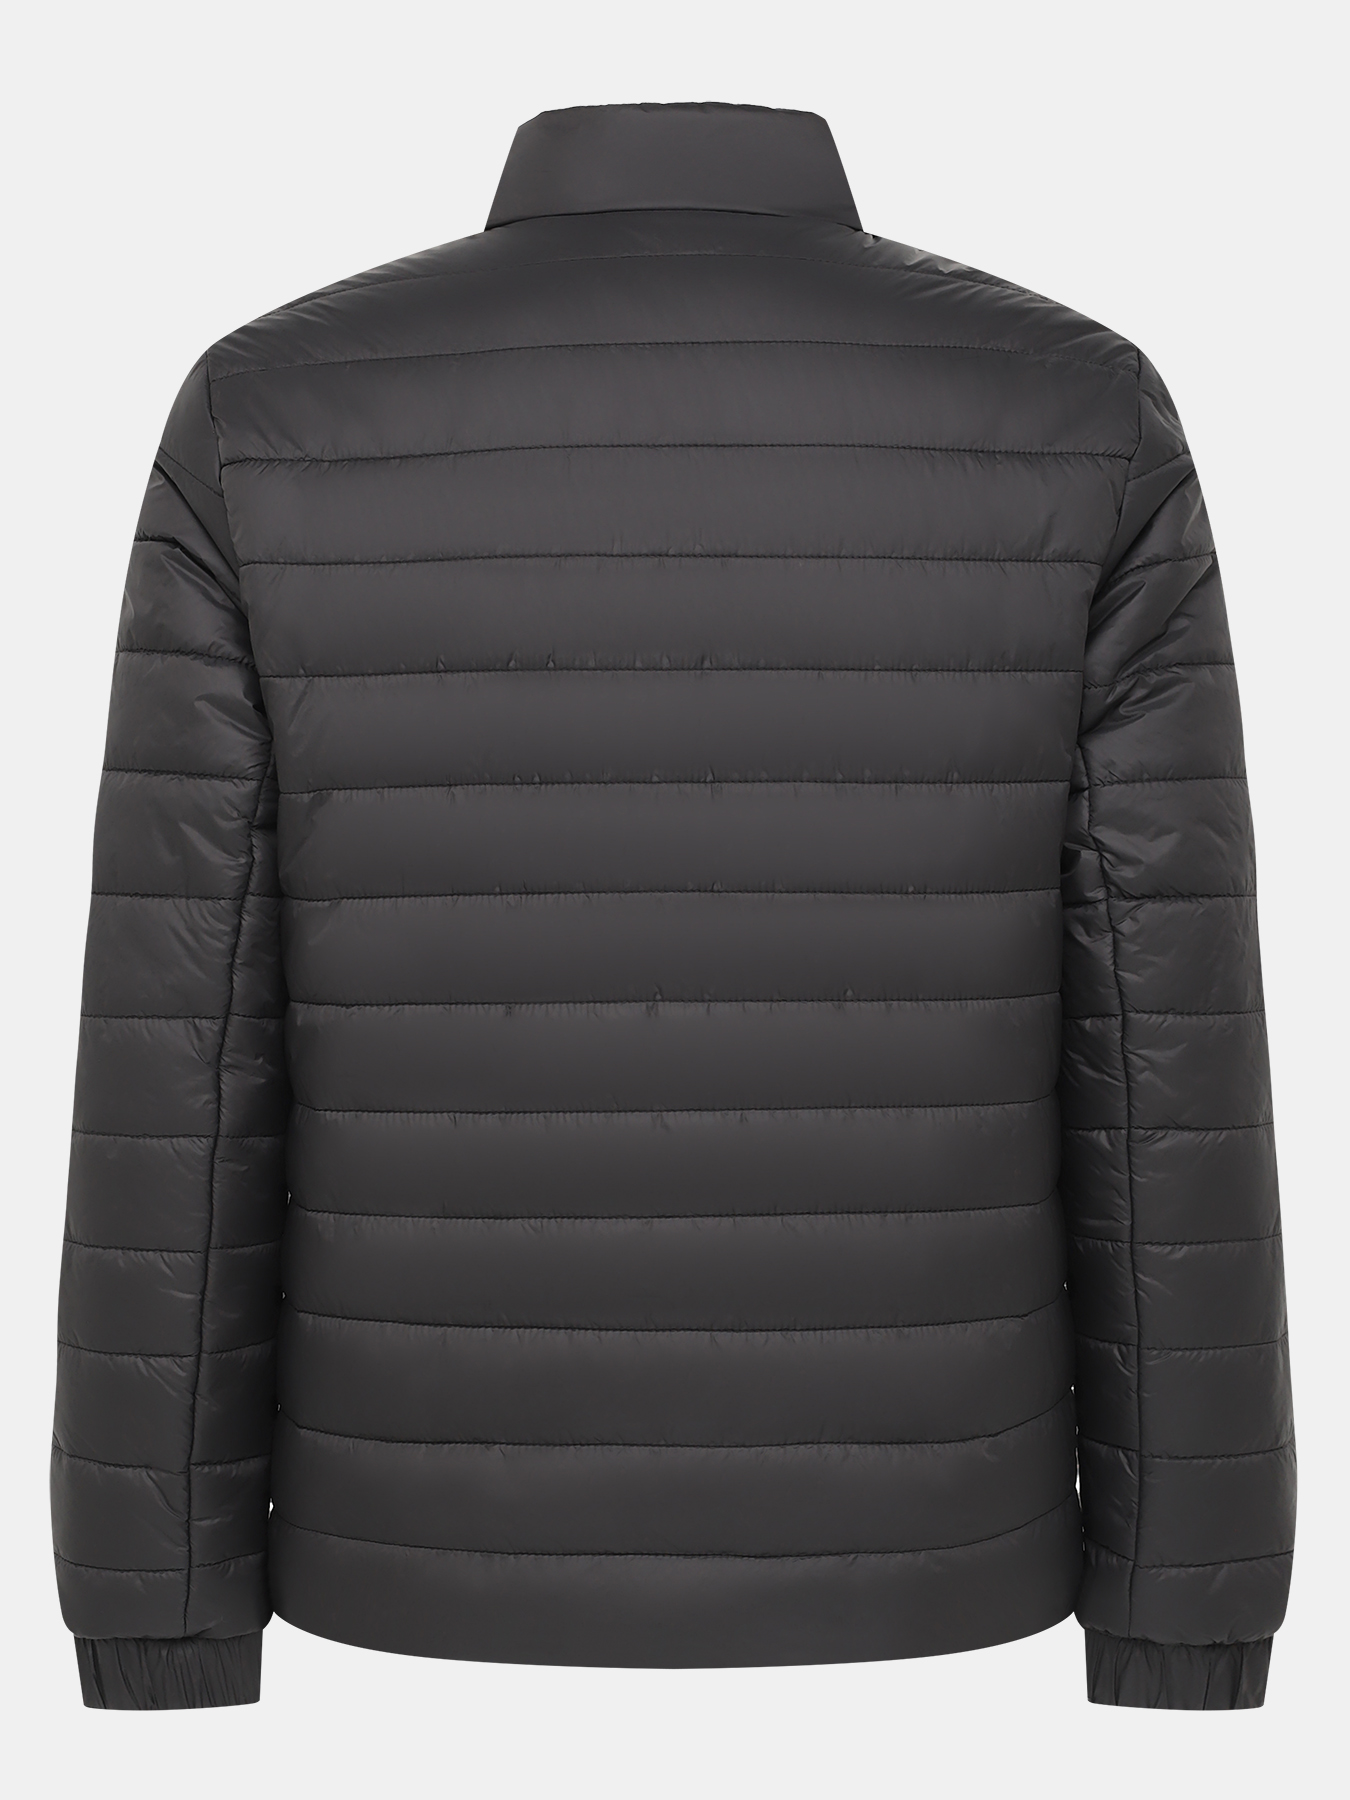 Куртка Benti HUGO 434502-043, цвет черный, размер 48-50 - фото 3